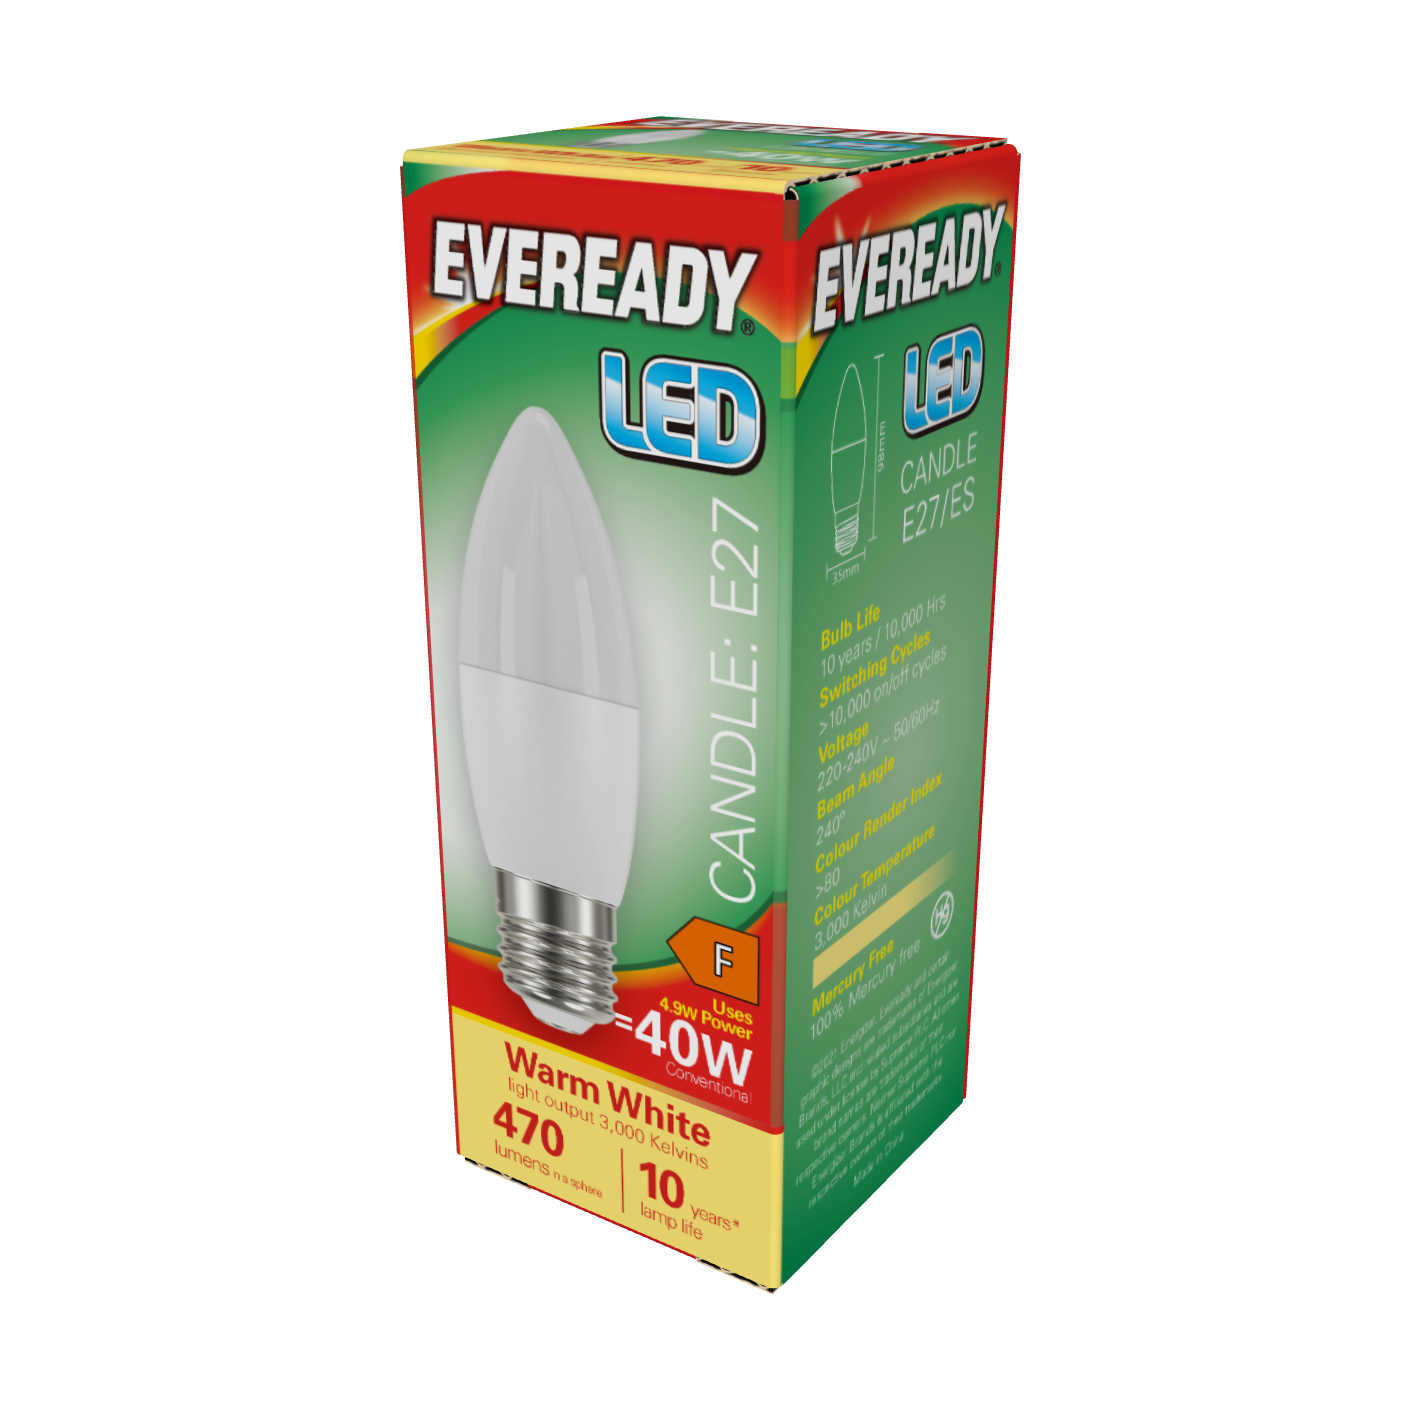 Vela LED Eveready E27 (ES) 470lm 4,9W 3.000K (Blanco Cálido), Caja de 1